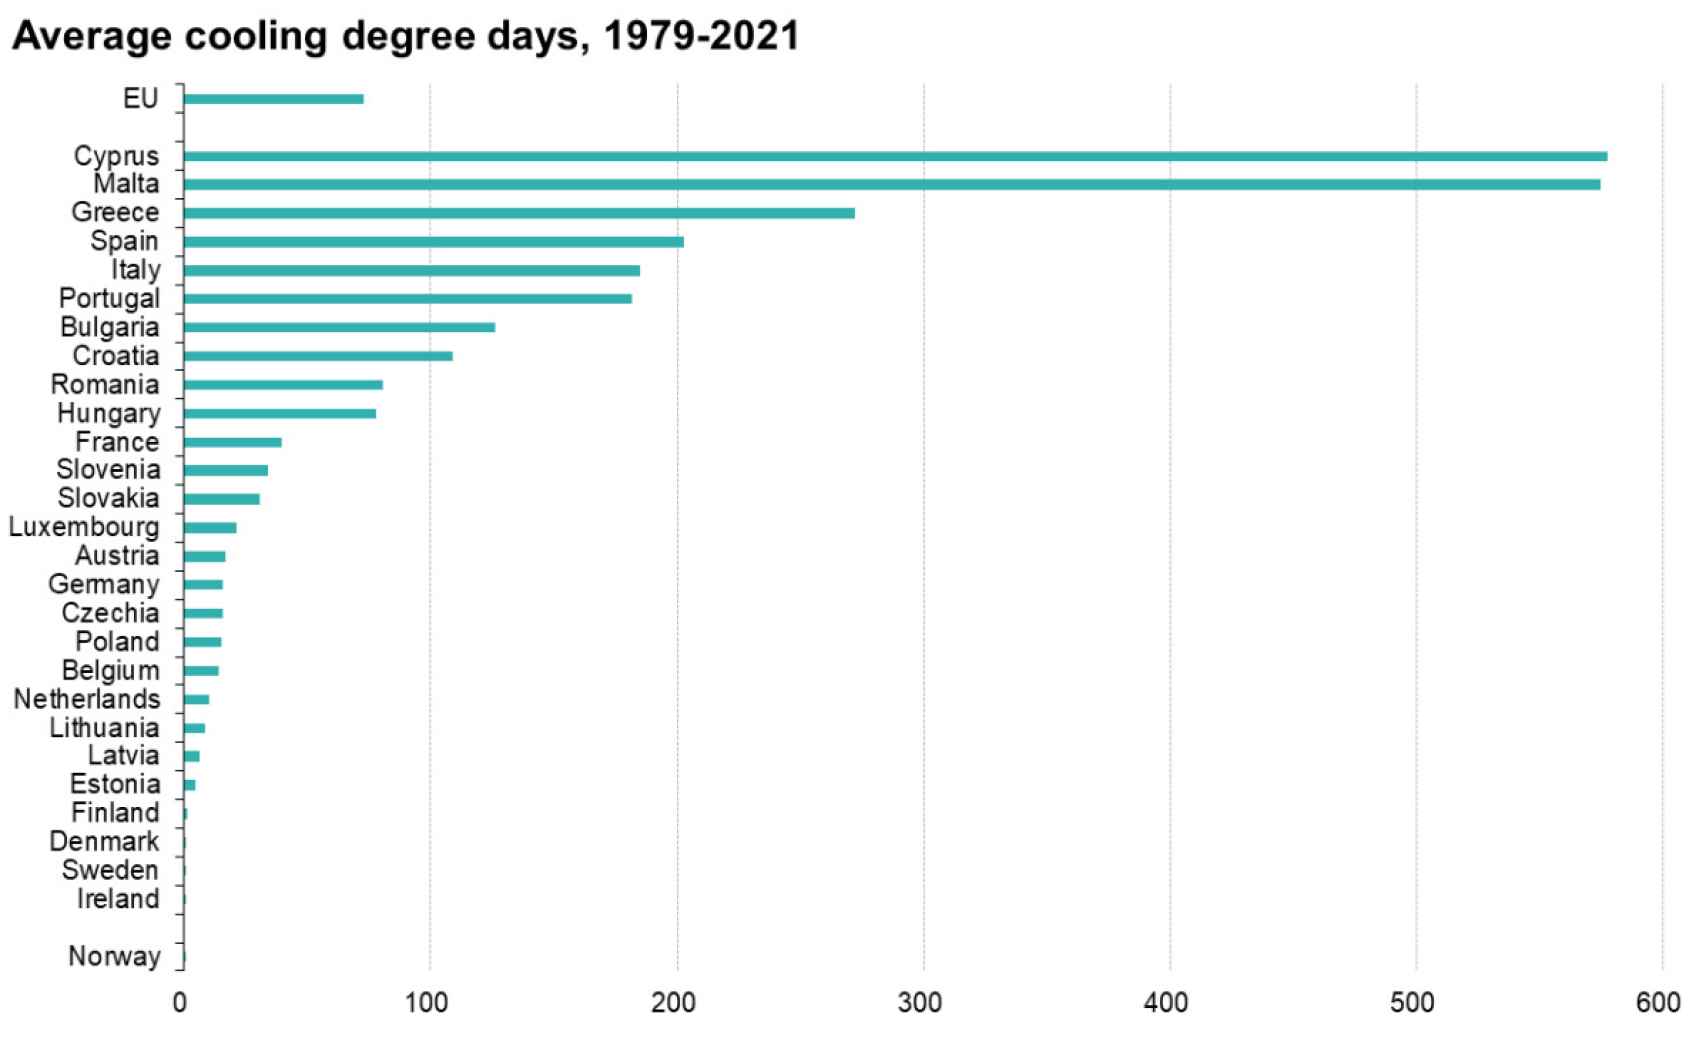 Media de días con necesidad de refrigeración de 1979 a 2021.